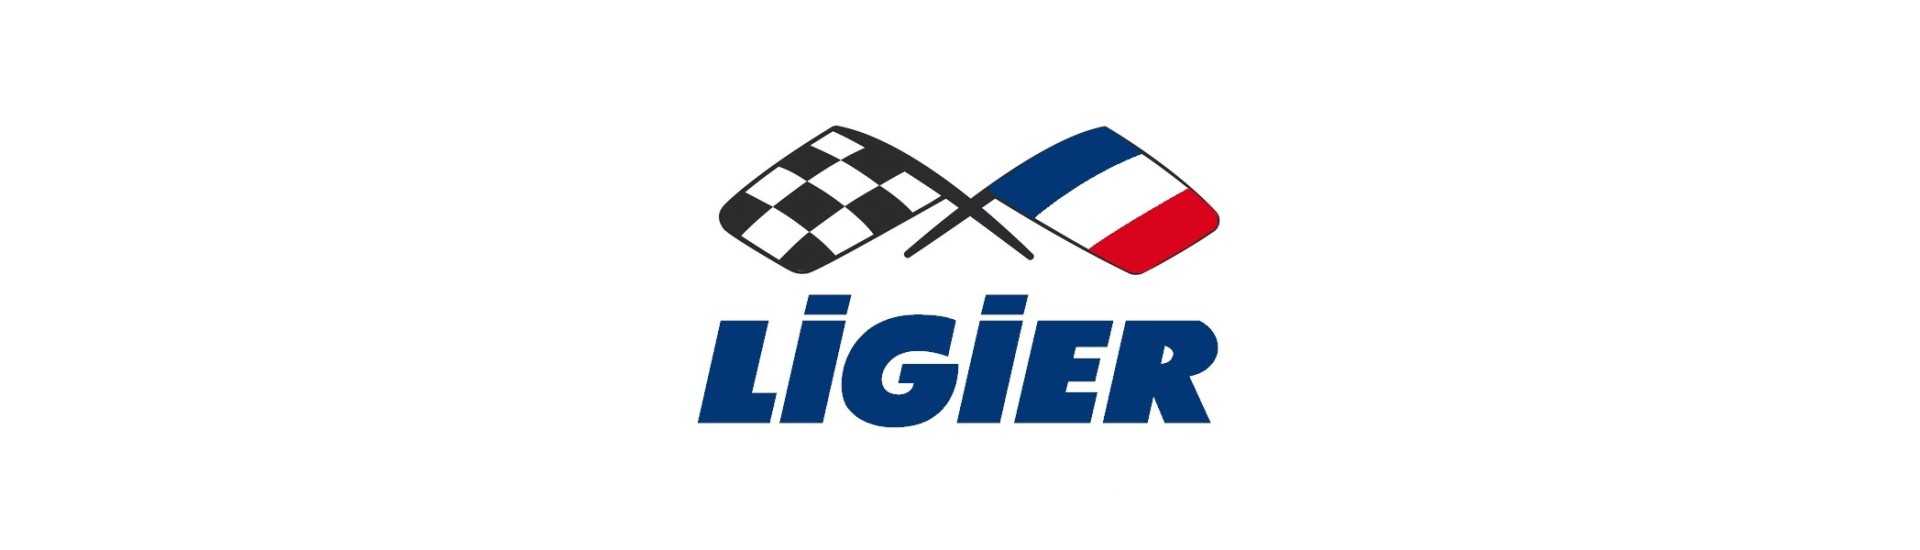 Handbremsleiter für ein Auto ohne Lizenz Ligier